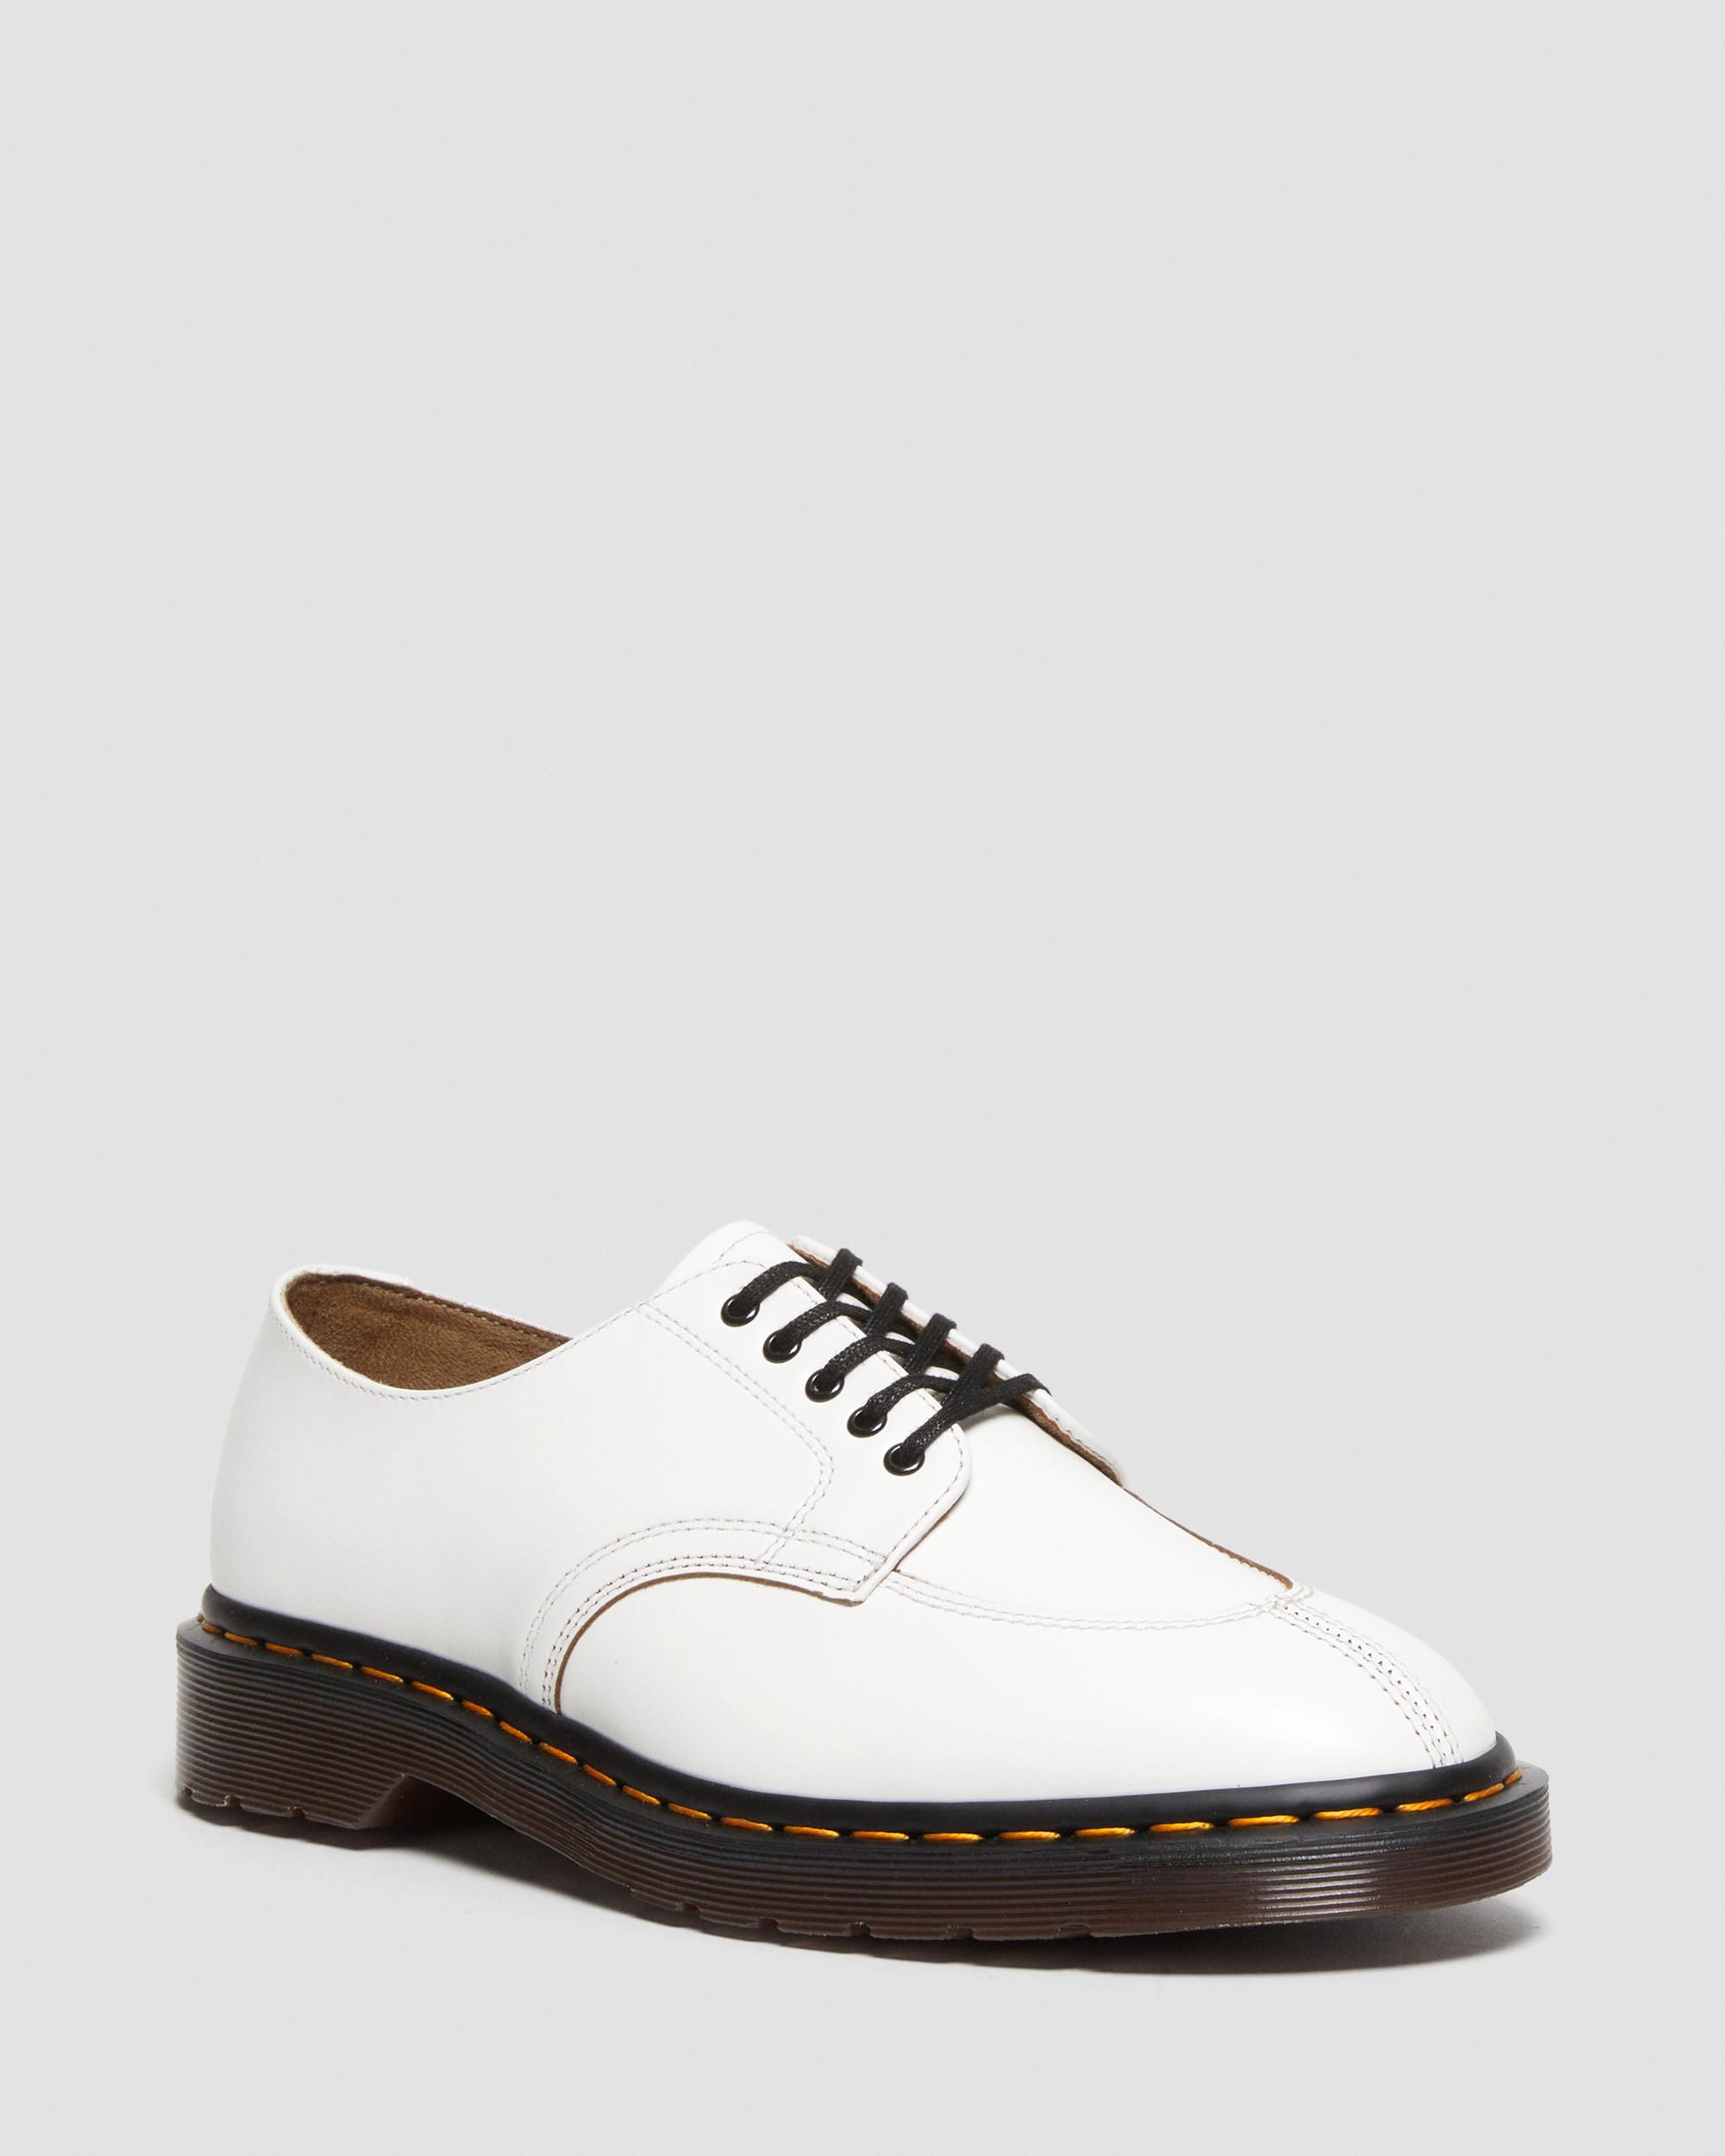 2046 Vintage Smooth Leather Oxford Shoes2046 Vintage Smooth -nahkakengät Dr. Martens